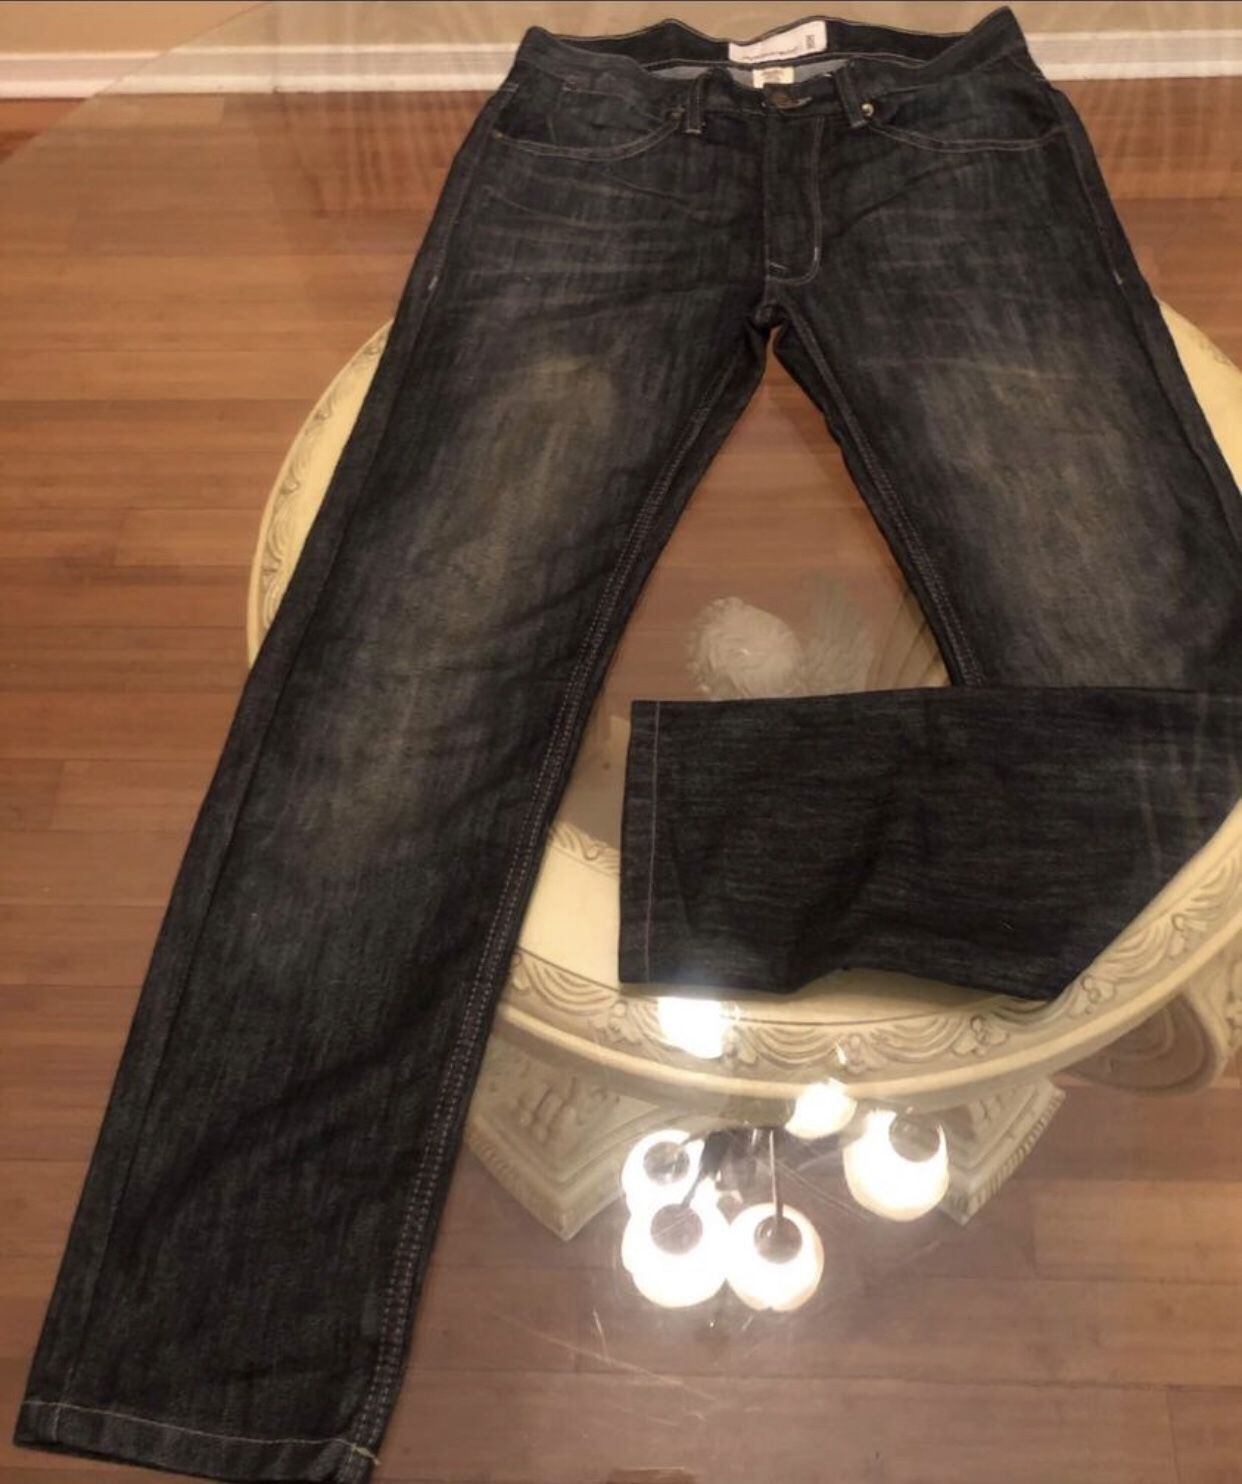 Jeans -PaperDenimCloth Men size 30x30 New-77064 zipcode